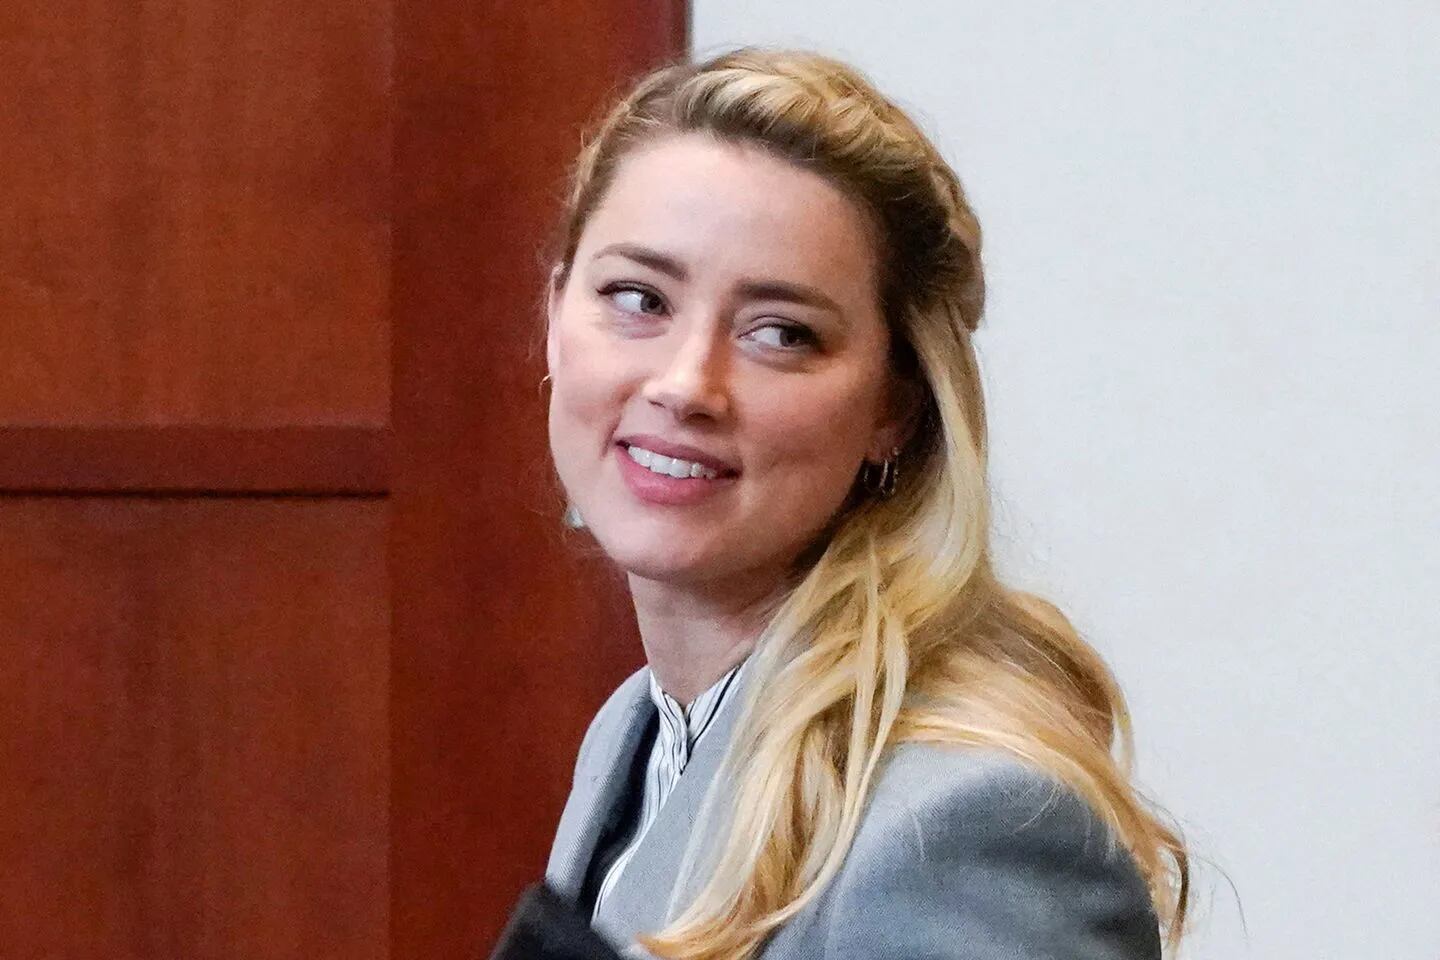 La actriz Amber Heard recibió una oferta millonaria para participar en una película de adultos.